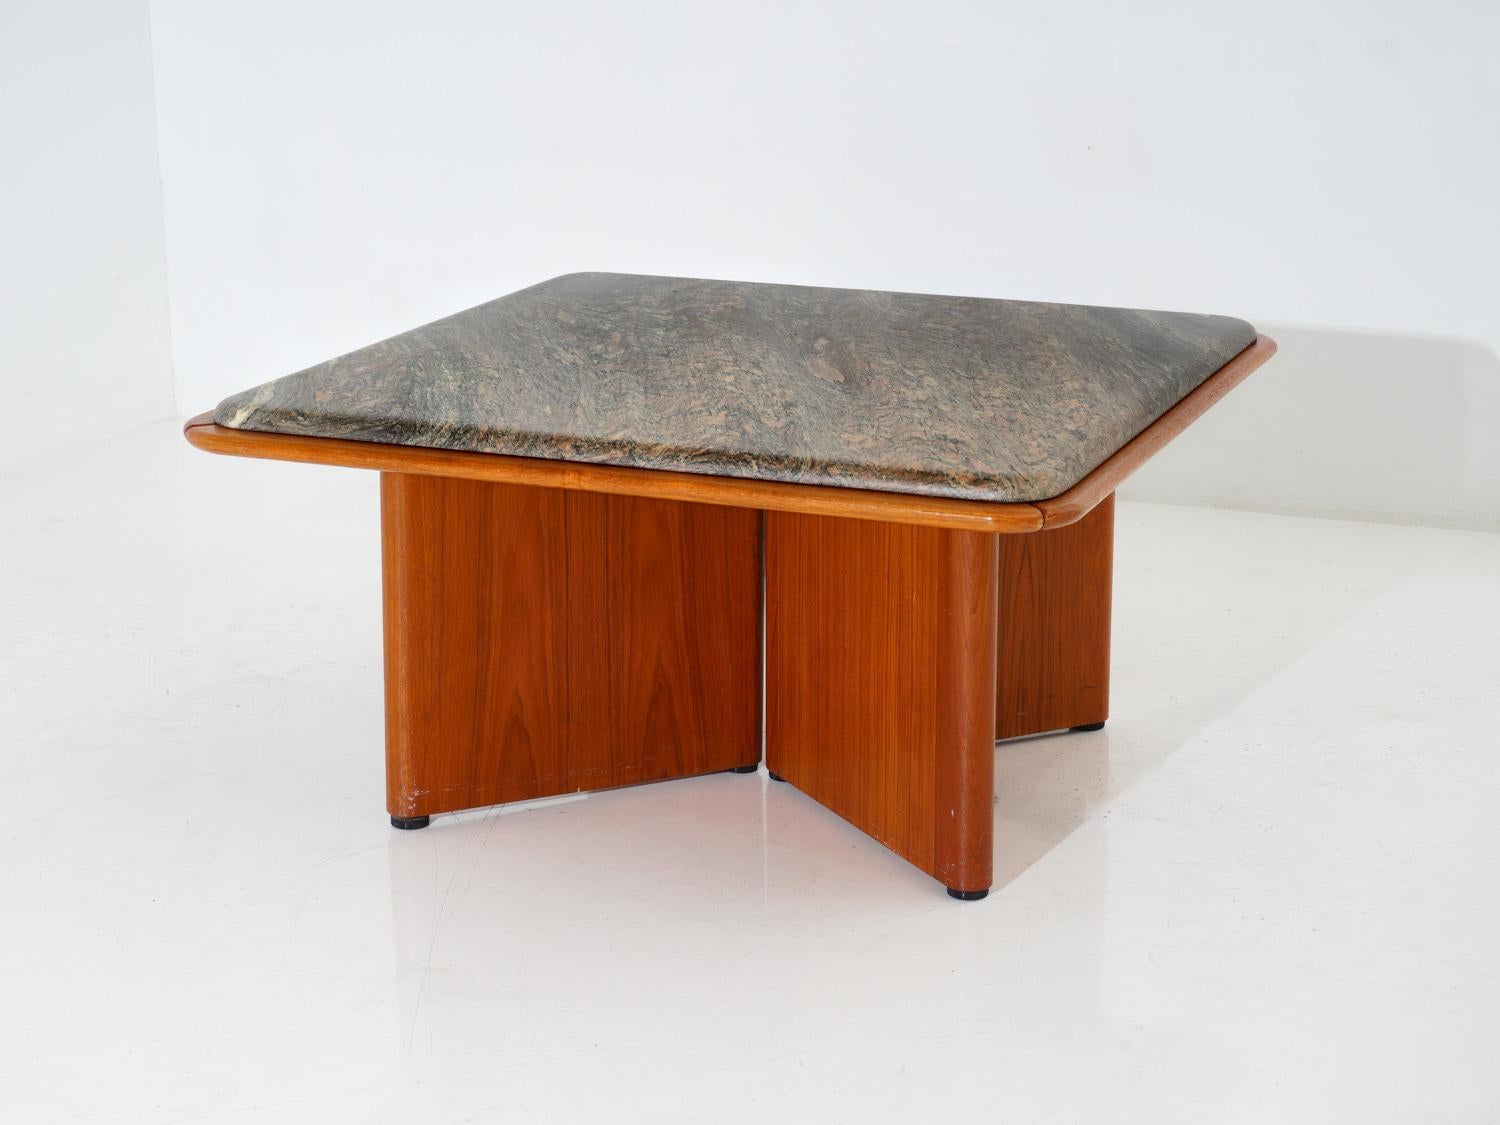 Cette table basse en marbre et teck vous permettra d'améliorer la qualité de votre salon. Ce mélange parfait de marbre élégant et de teck frais apporte une touche de style à votre espace.

- 17 